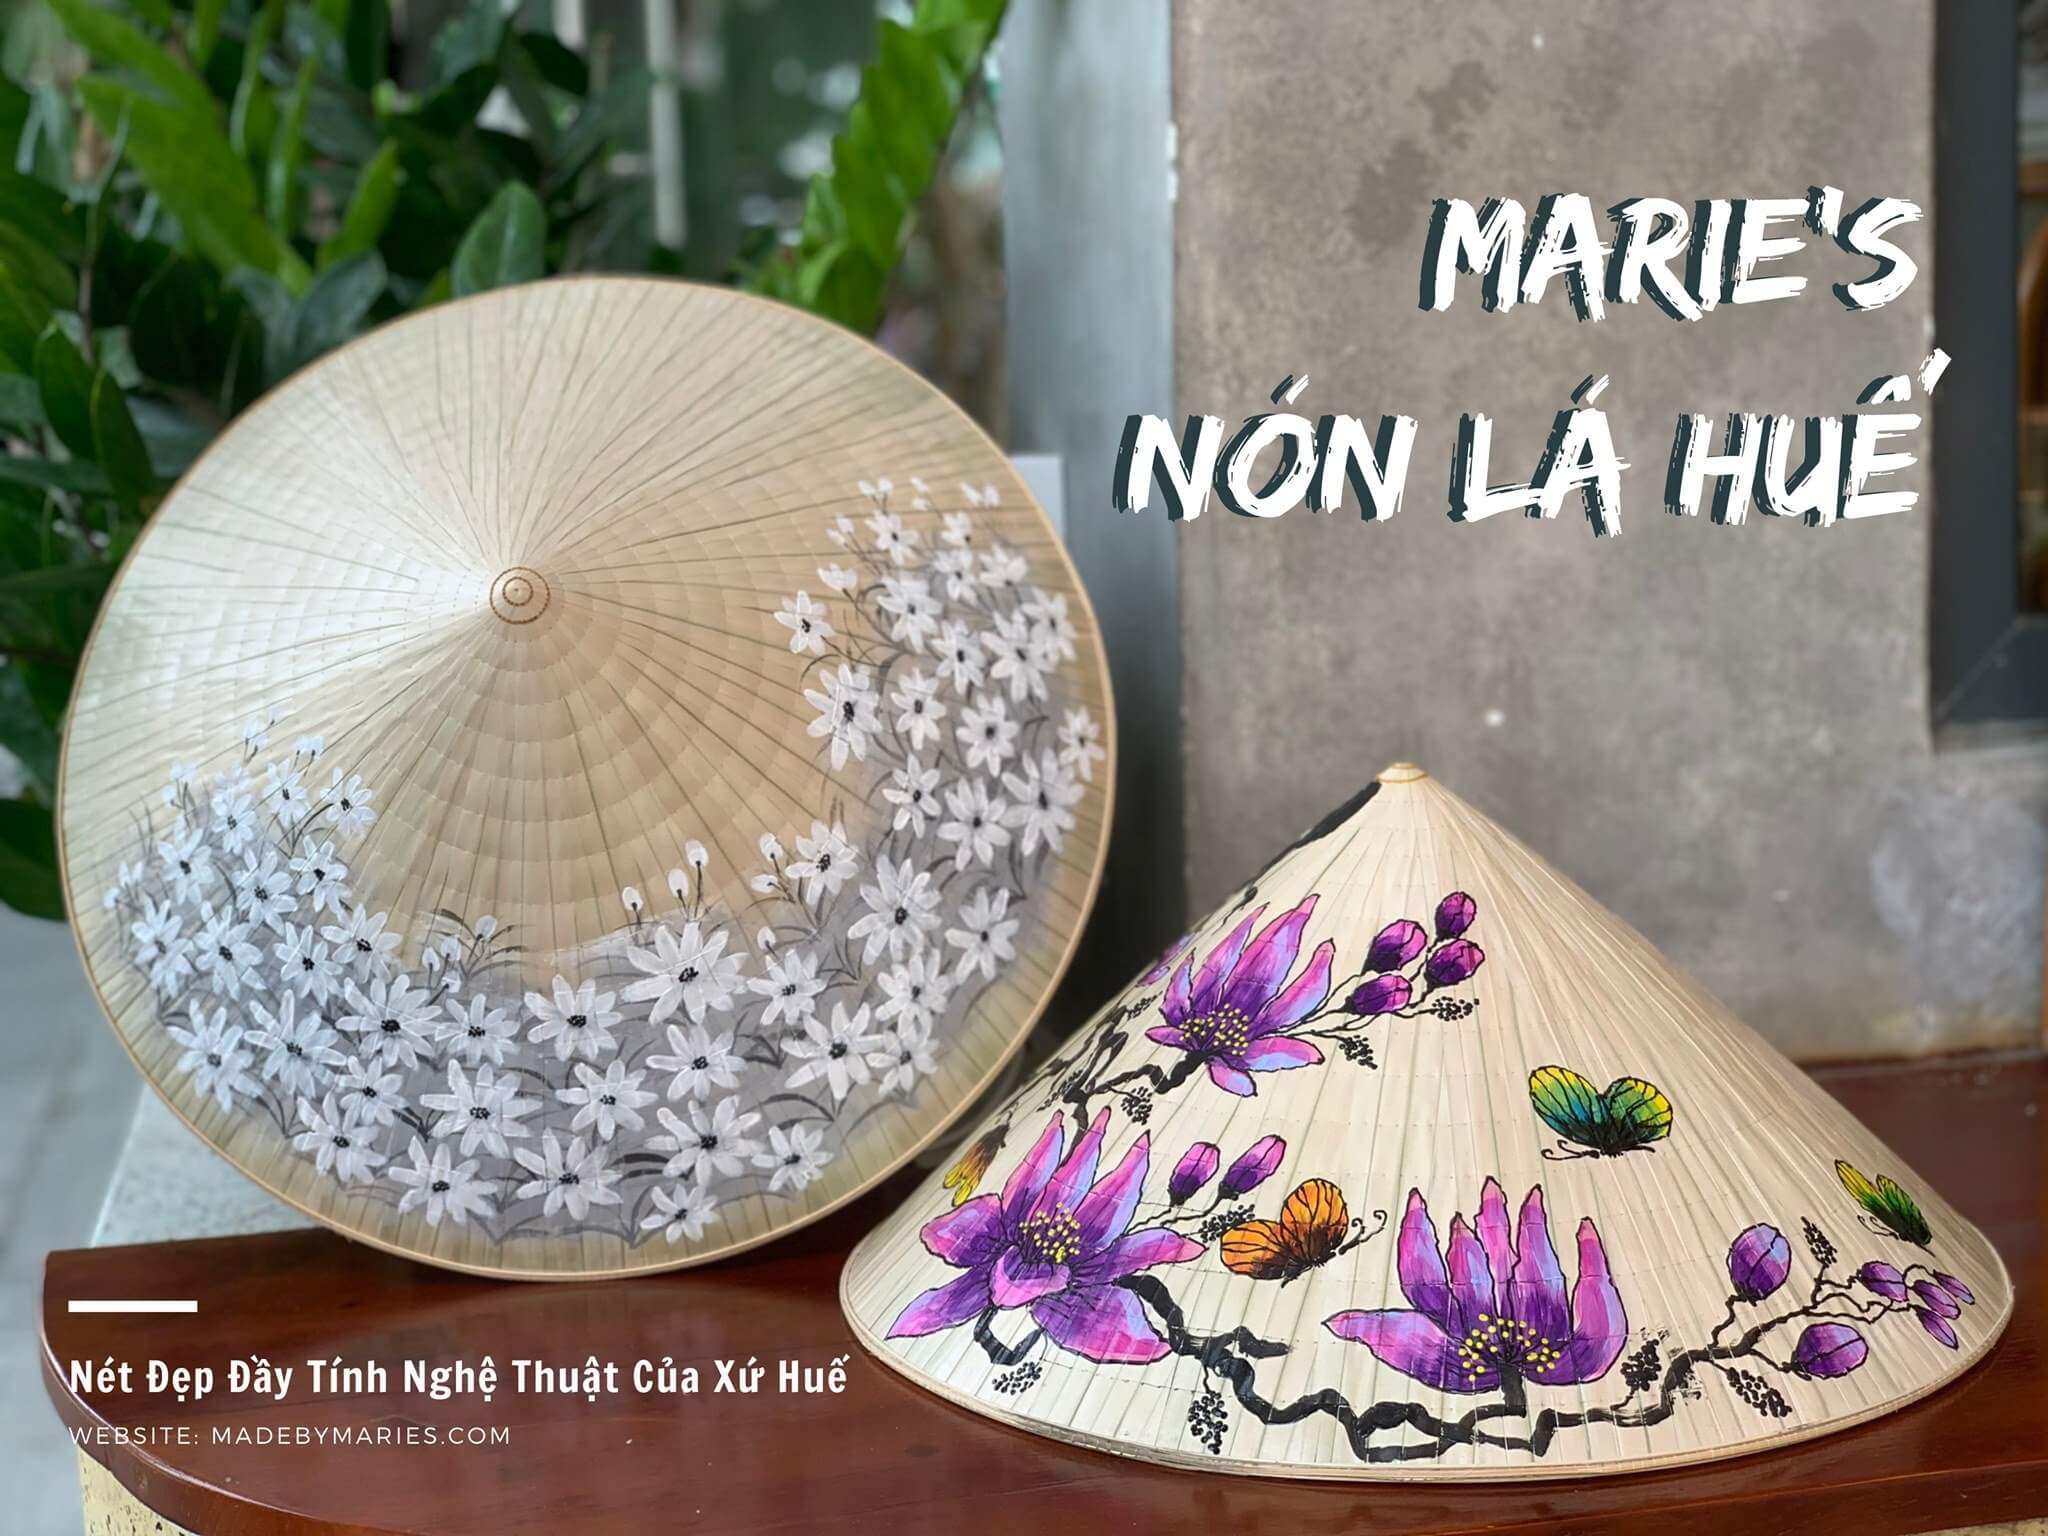 Văn hóa nón lá Huế - Maries - By Viet Artisans